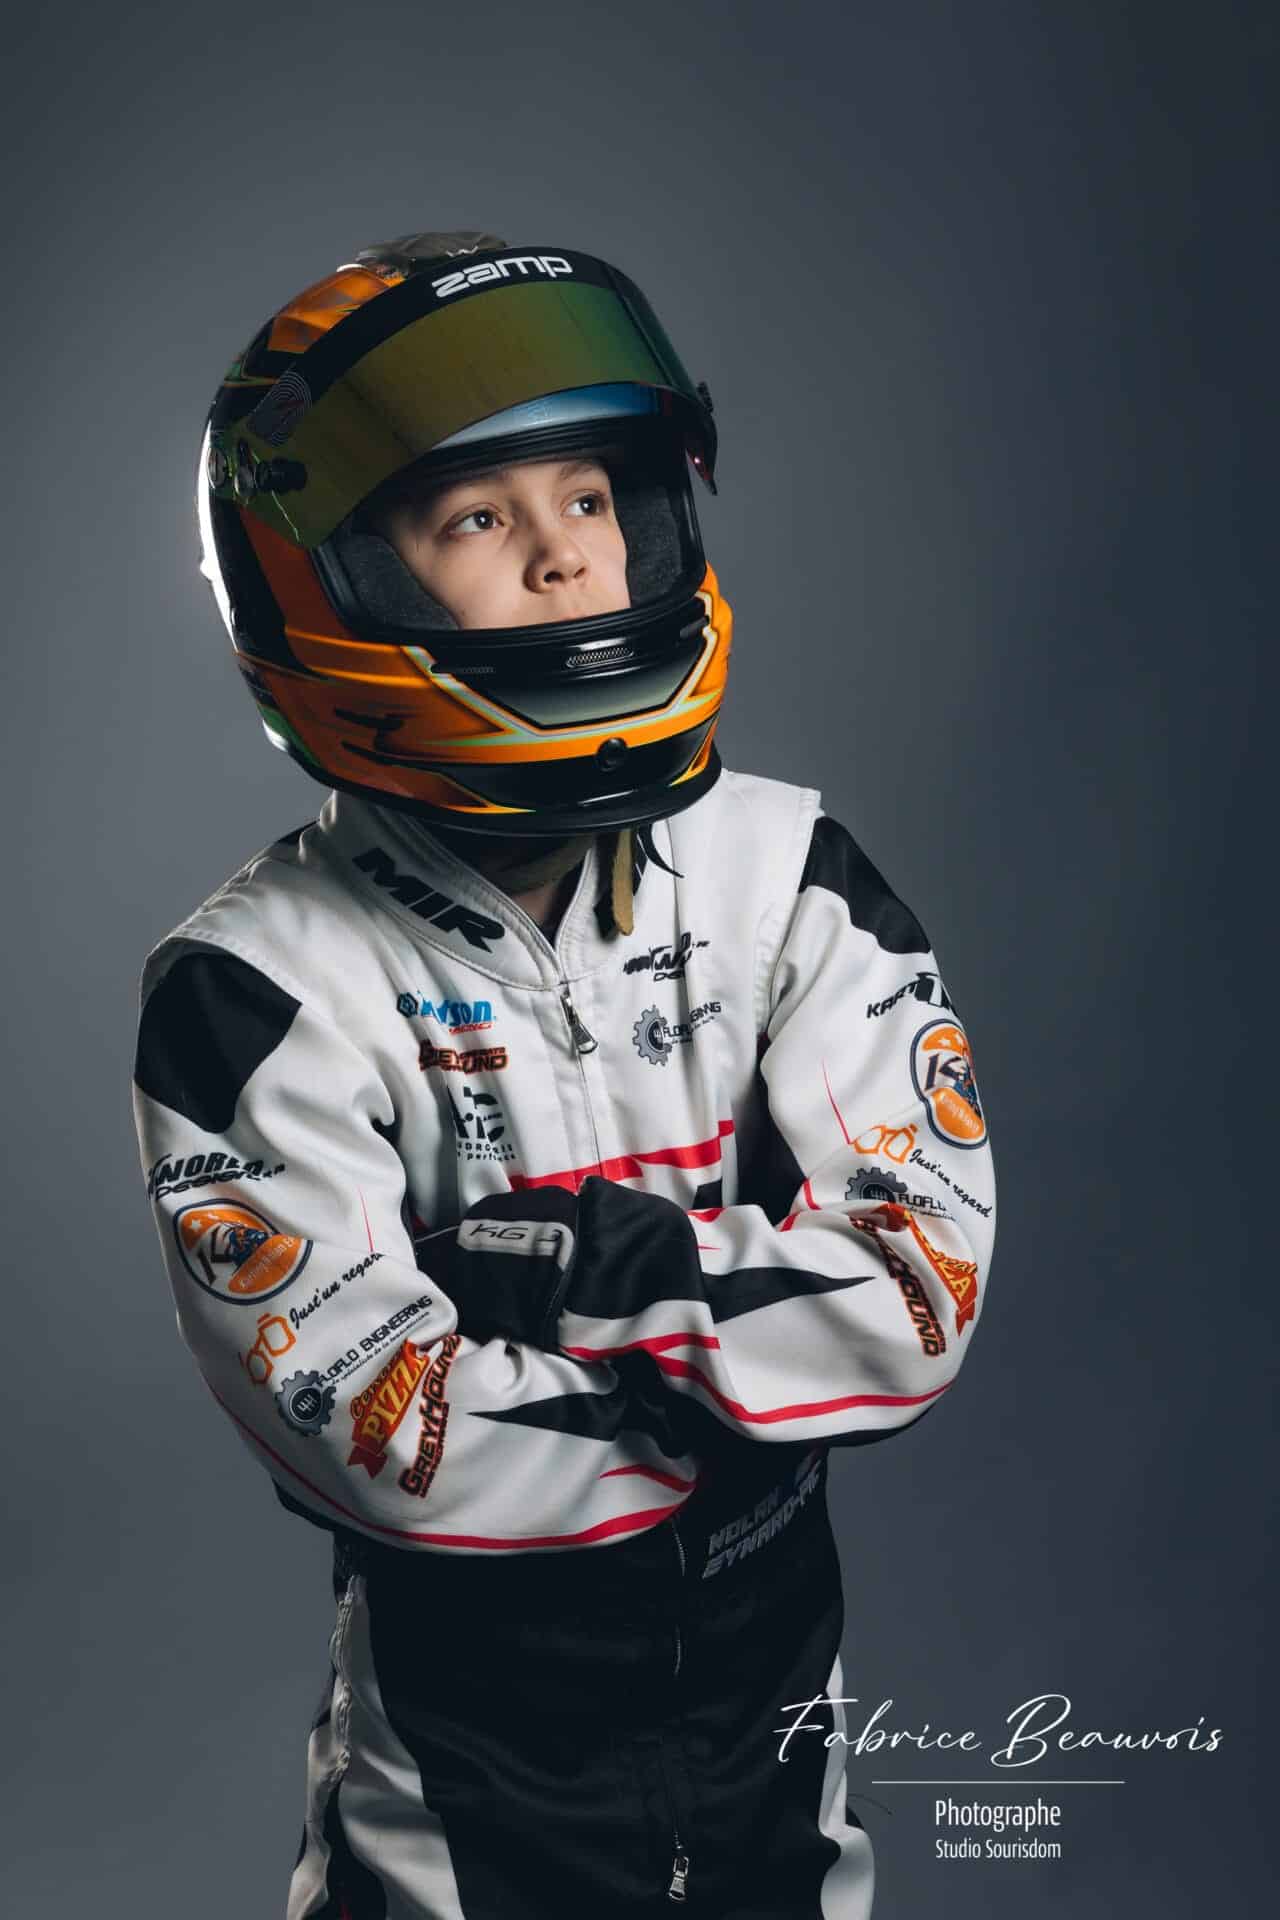 Portrait d'un champion de kart avec son casque de course